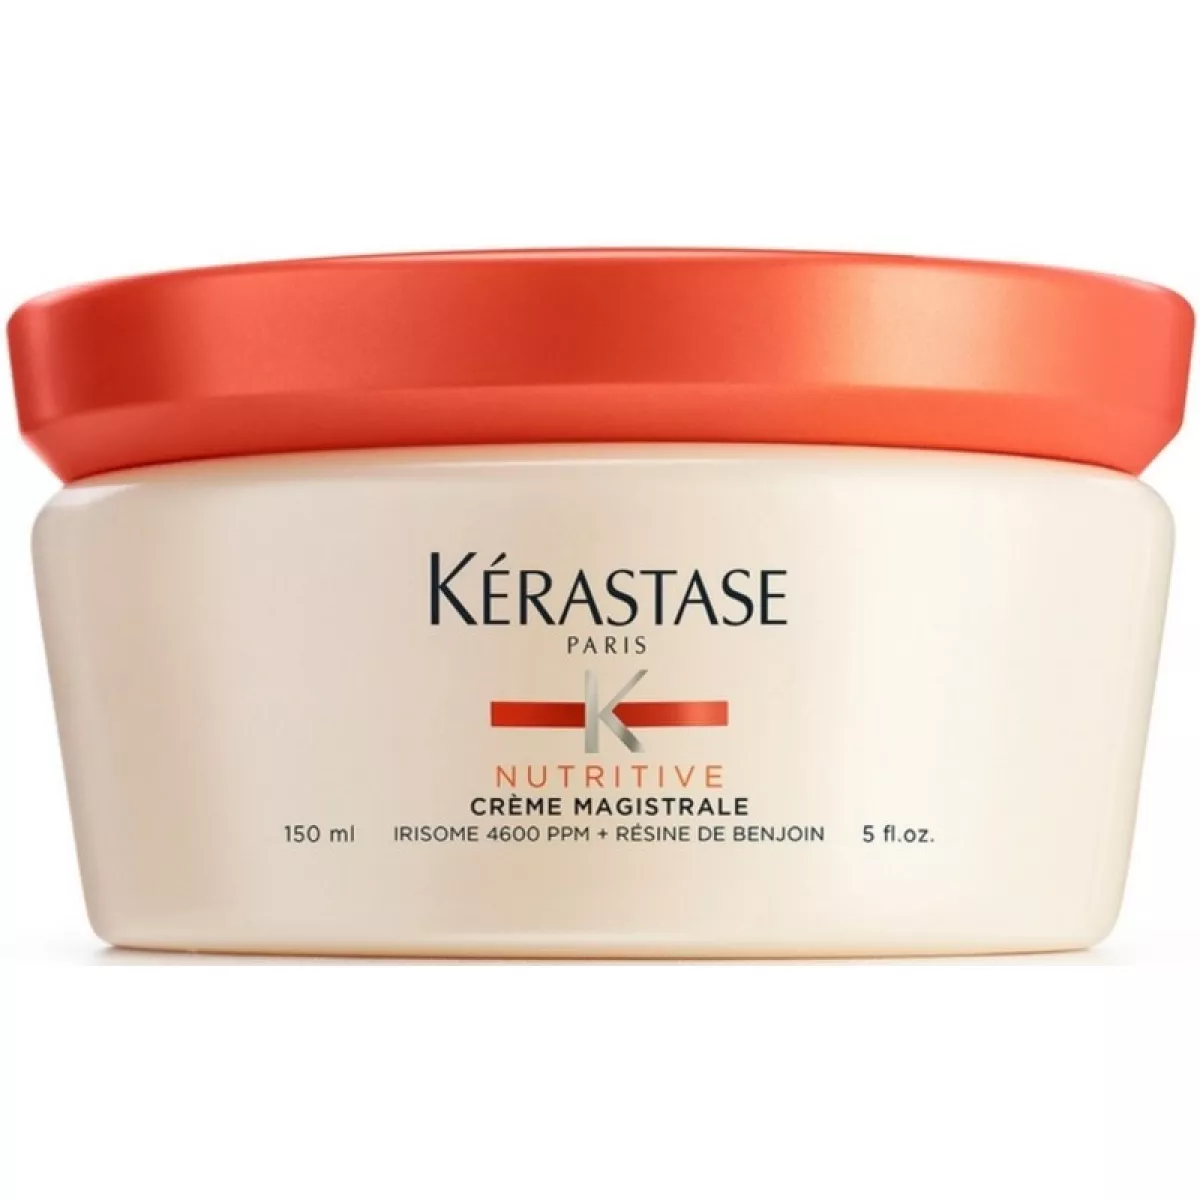 #1 - Kerastase Nutritive Creme Magistral Leave-In 150 ml